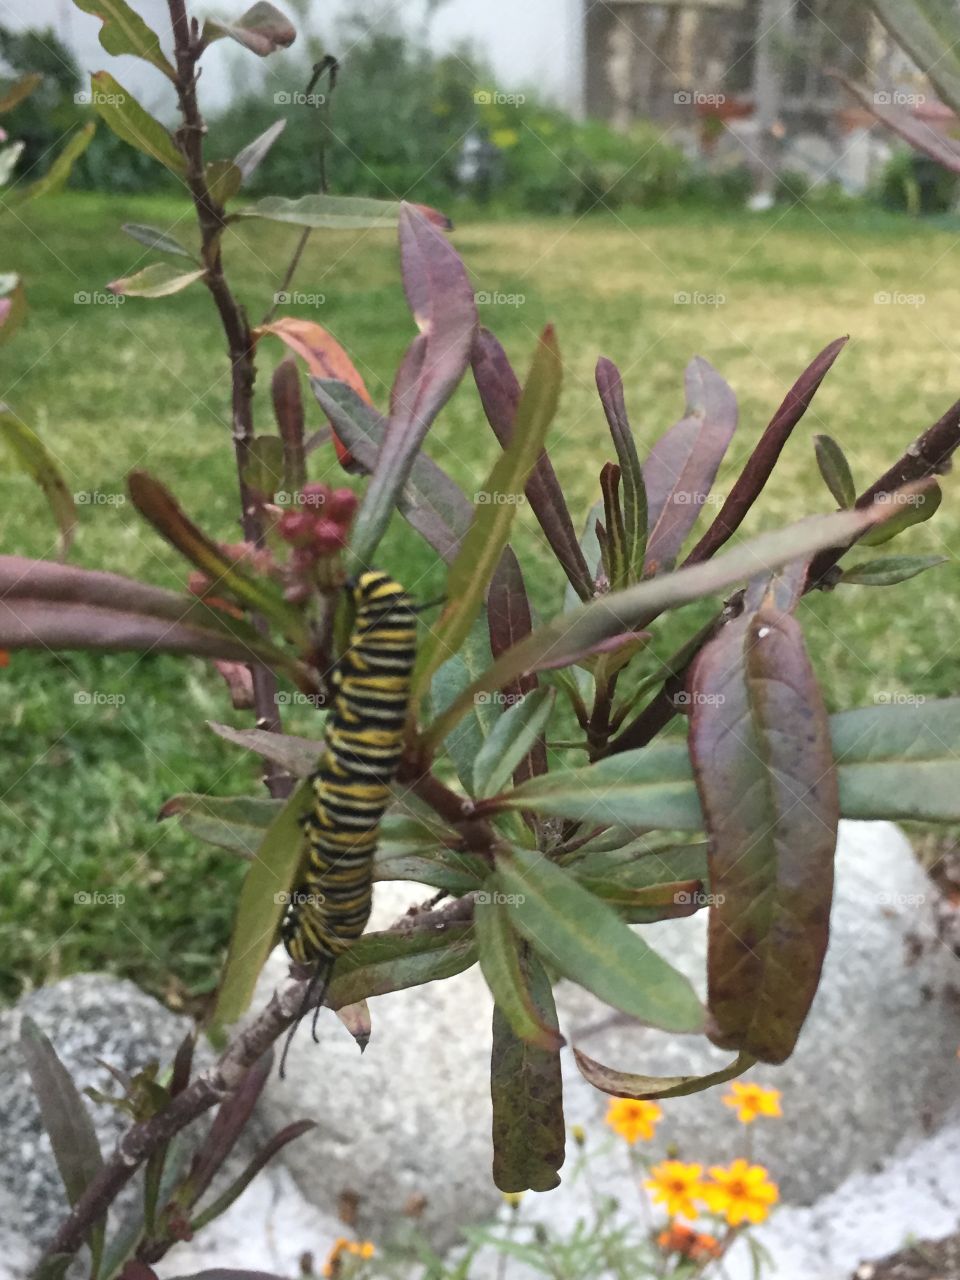 Monarch caterpillar 